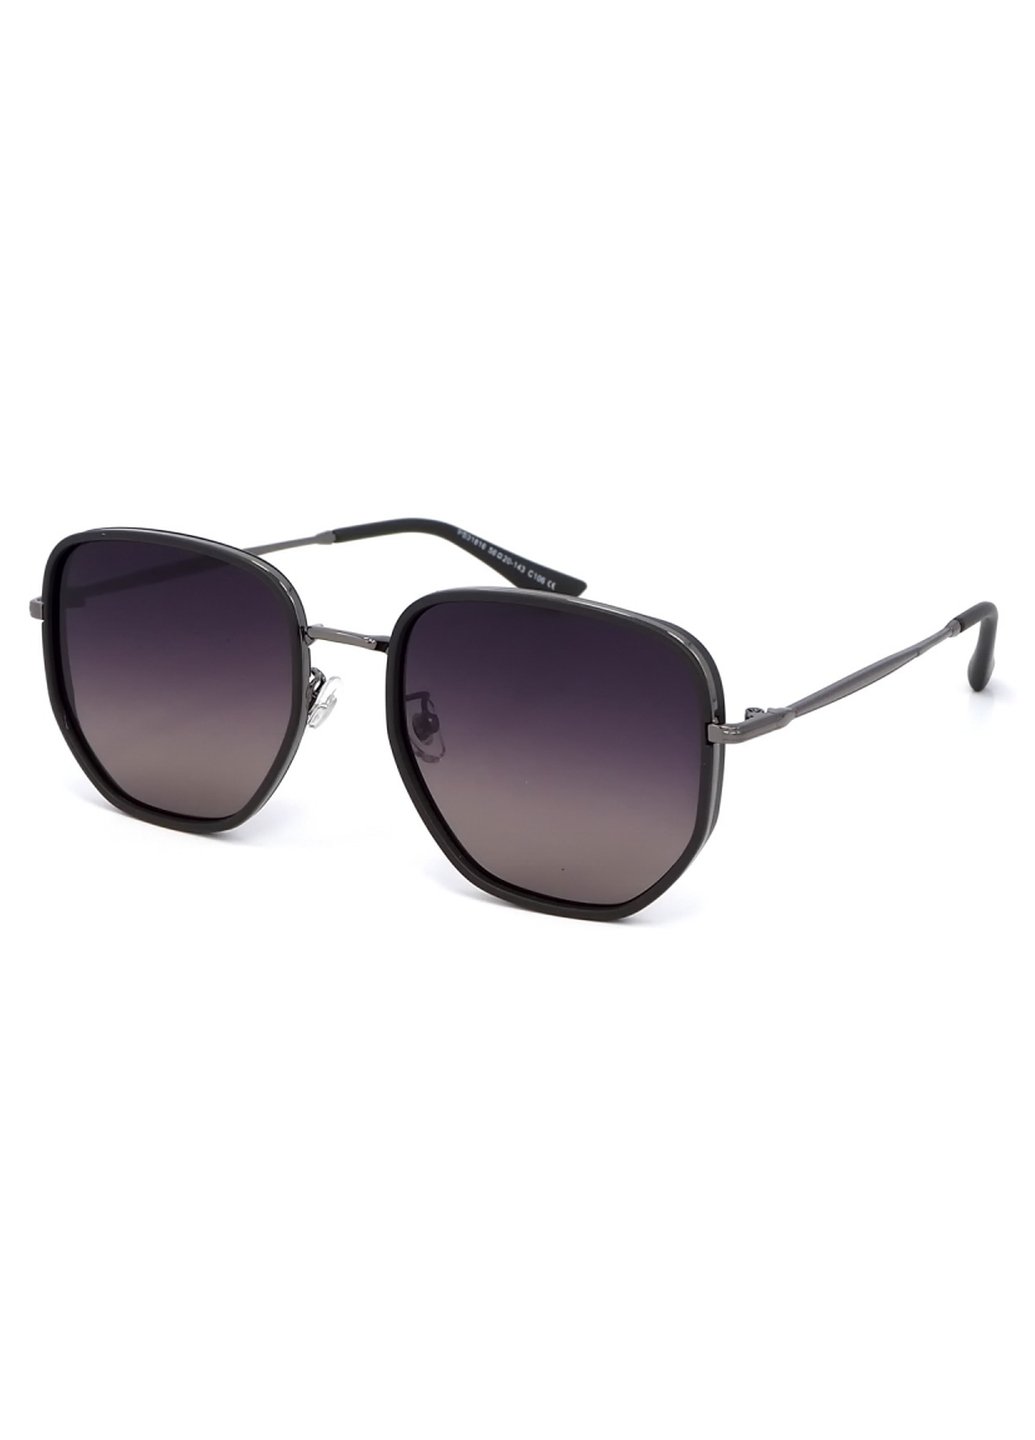 Купить Женские солнцезащитные очки Merlini с поляризацией S31816P 117041 - Черный в интернет-магазине